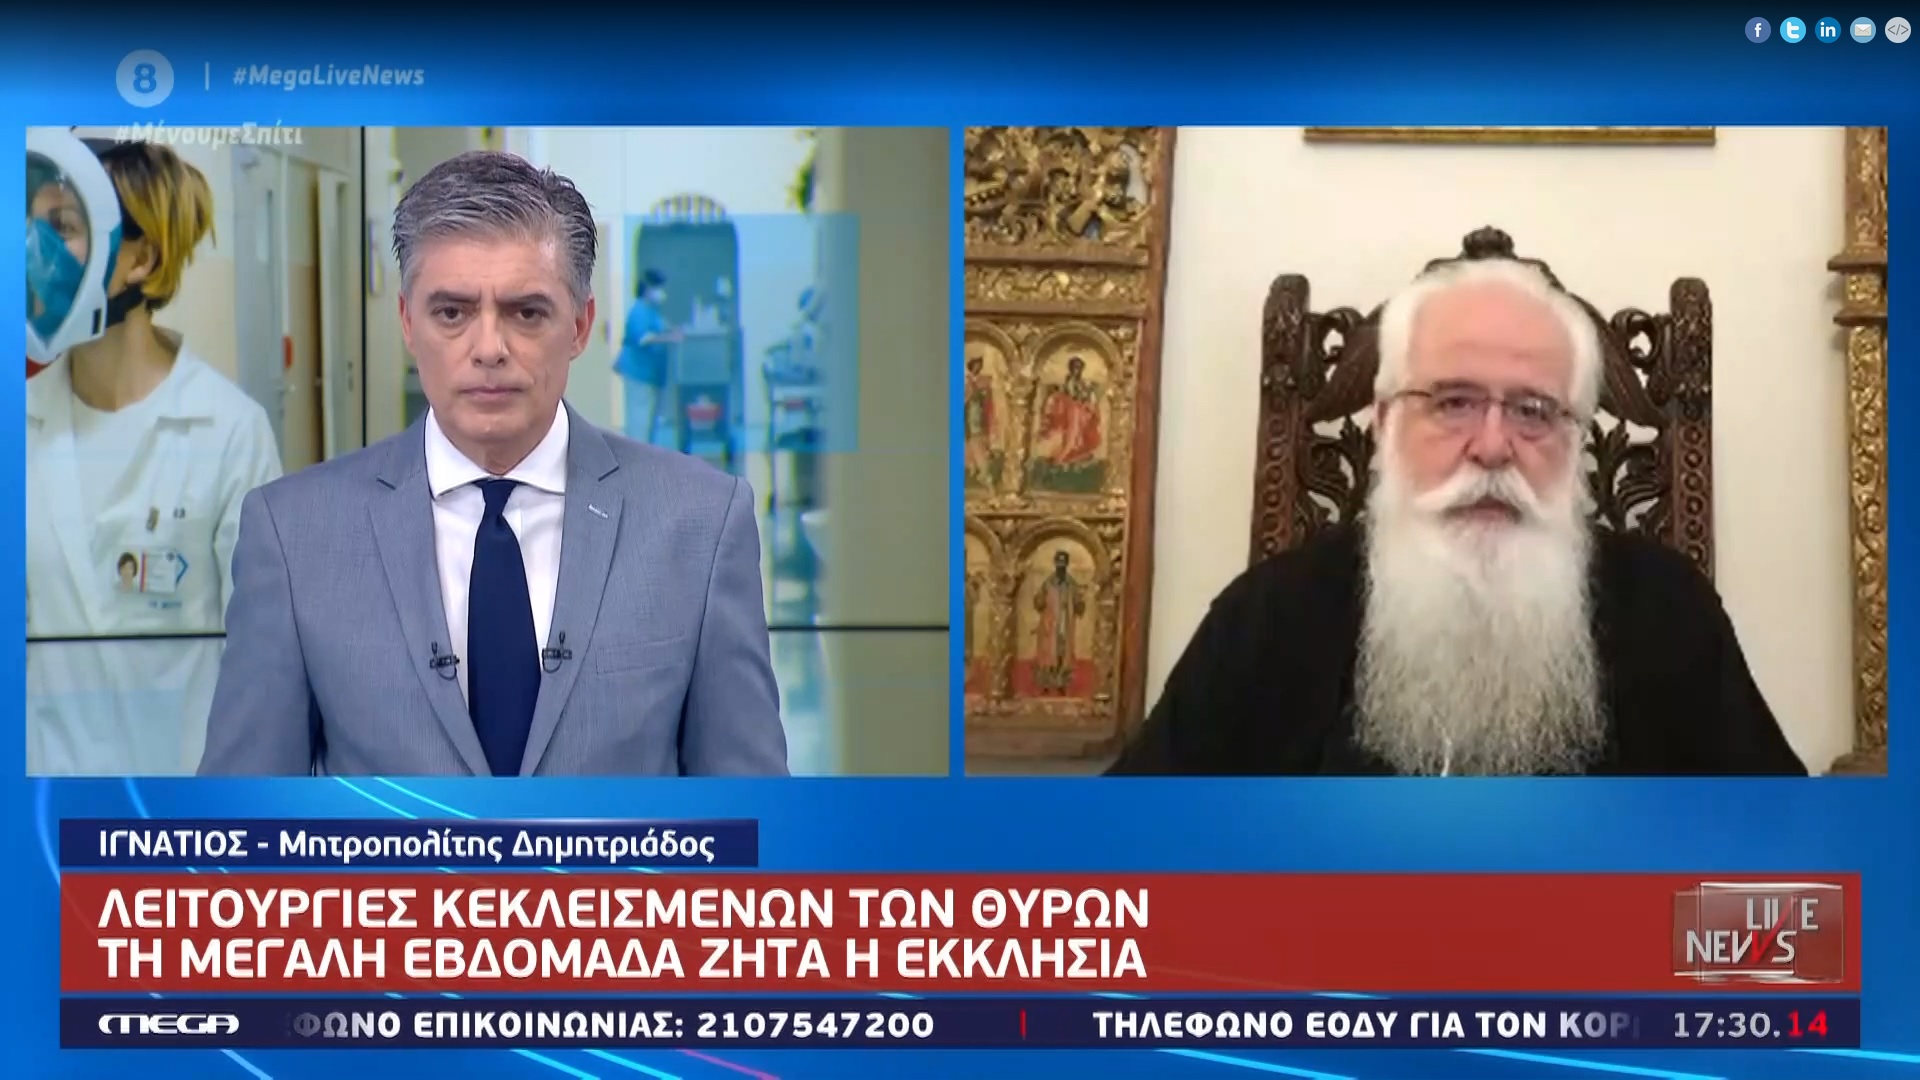 Δημητριάδος Ιγνάτιος: «Δεν διώκεται ο Χριστιανισμός και η Εκκλησία» – Τηλεοπτική συνέντευξη στο Mega (video)